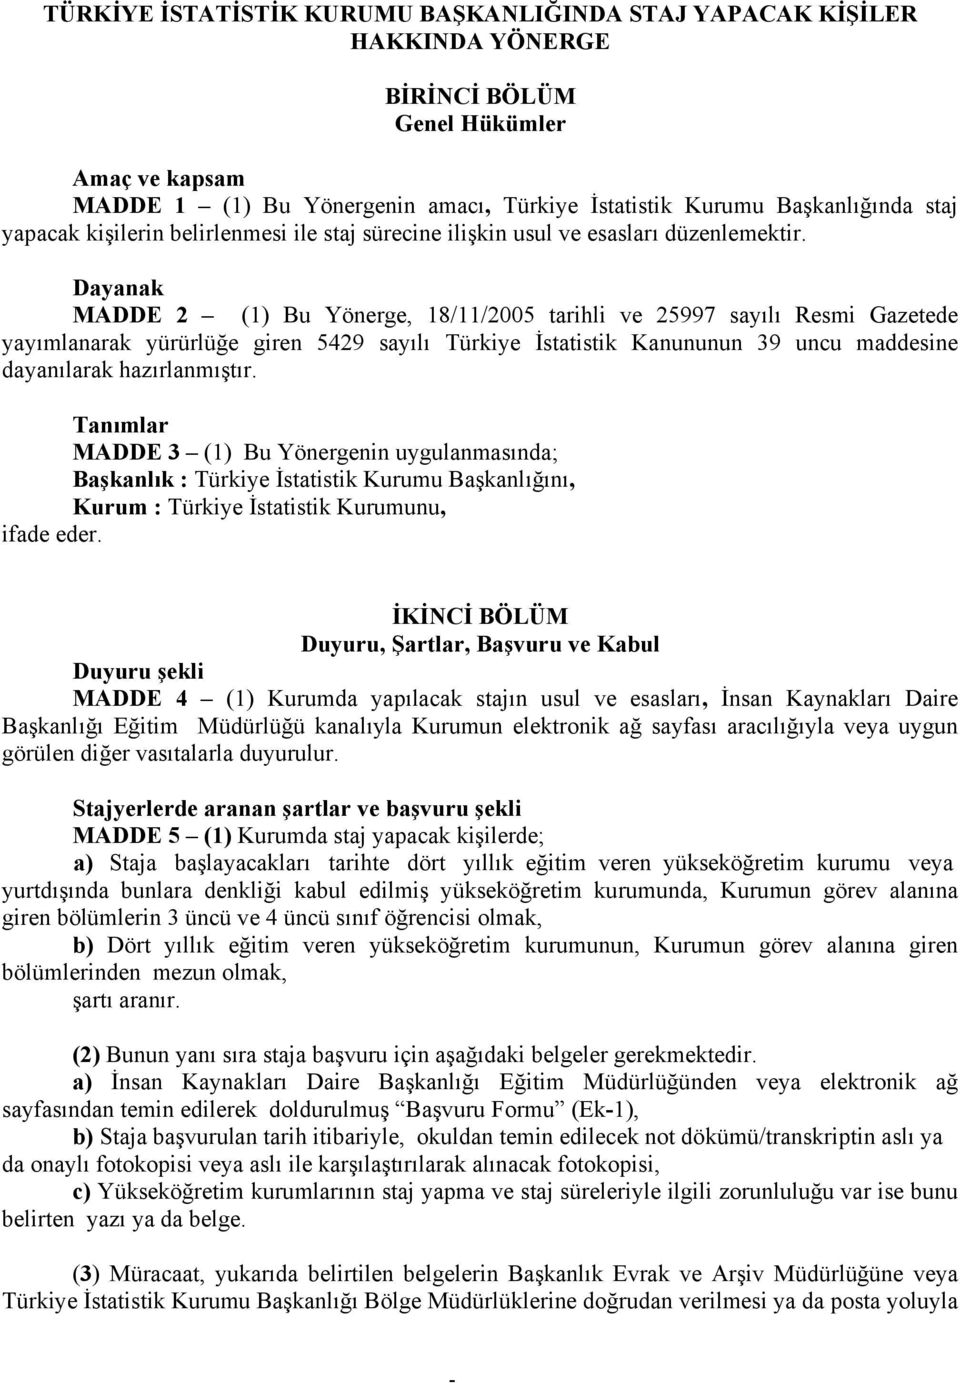 Dayanak MADDE 2 (1) Bu Yönerge, 18/11/2005 tarihli ve 25997 sayılı Resmi Gazetede yayımlanarak yürürlüğe giren 5429 sayılı Türkiye İstatistik Kanununun 39 uncu maddesine dayanılarak hazırlanmıştır.